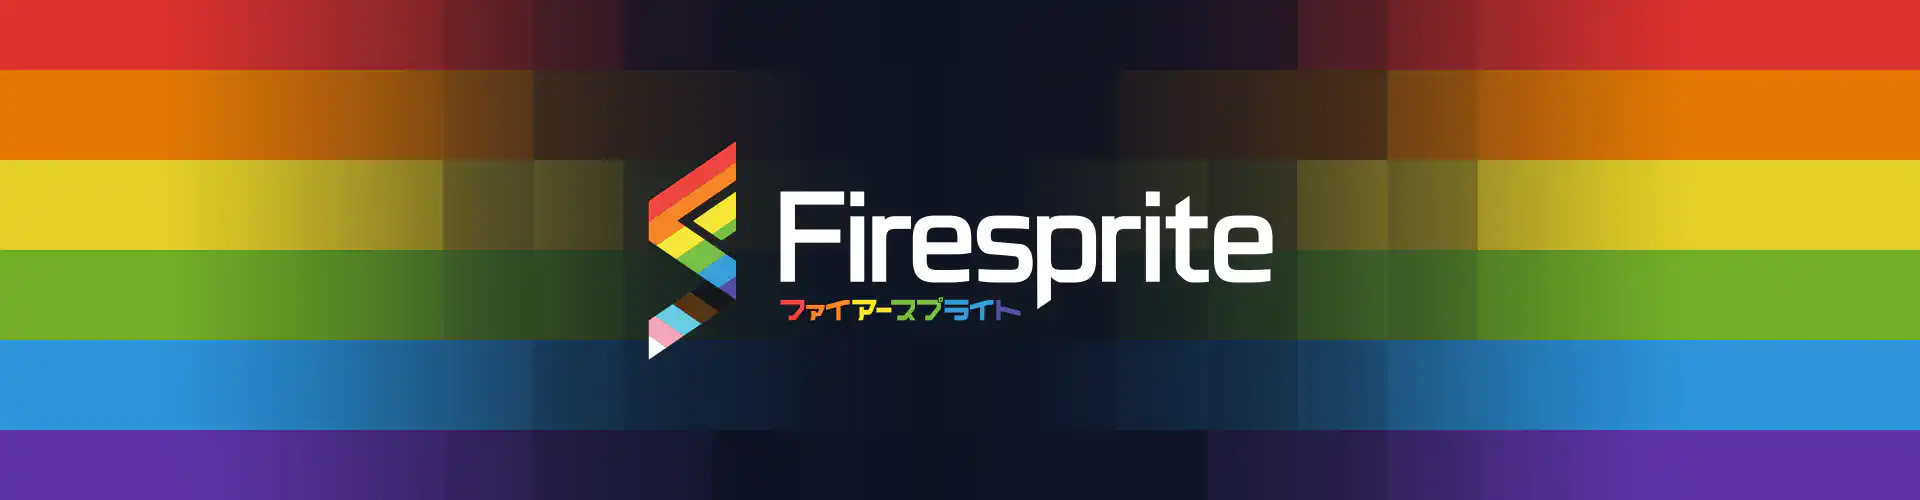 Pride at Firesprite